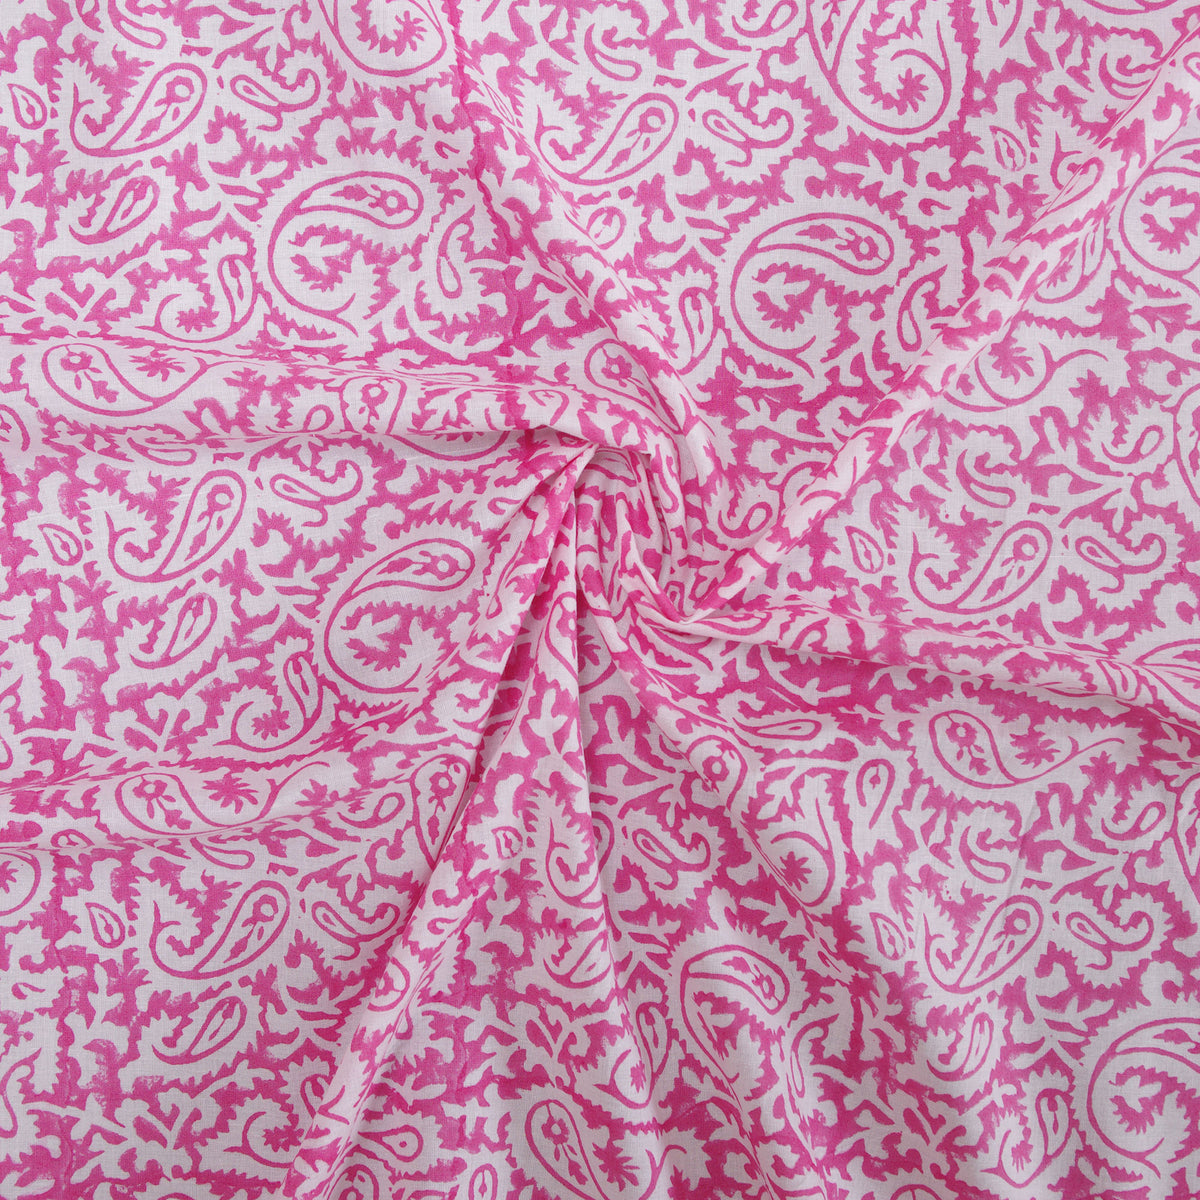 Indian Hand Block 100% Cotton Light Pink Women Dress Fabric Cloth Design 131